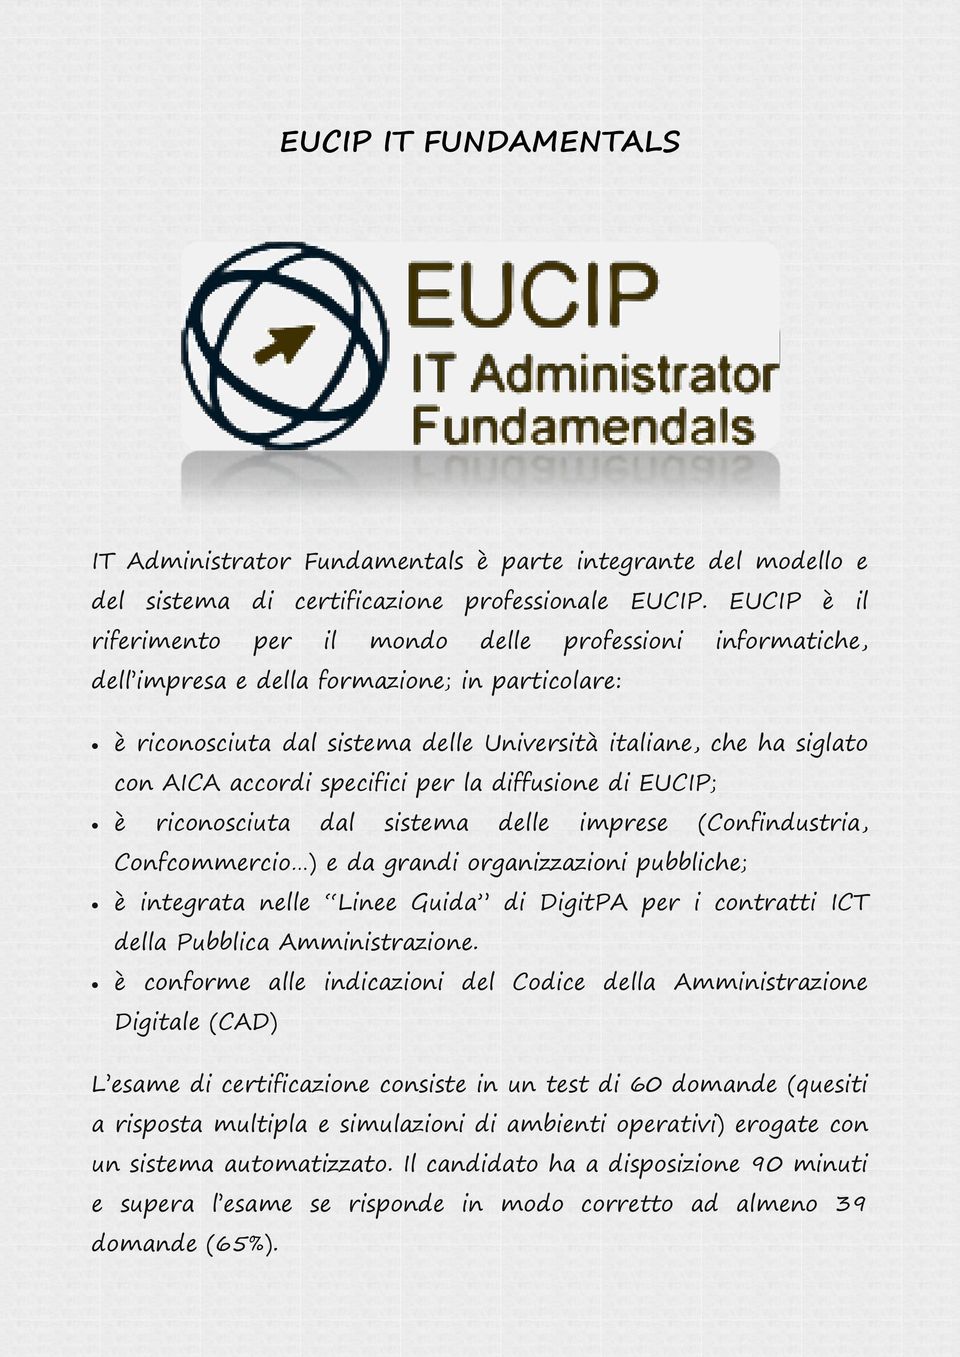 accordi specifici per la diffusione di EUCIP; è riconosciuta dal sistema delle imprese (Confindustria, Confcommercio ) e da grandi organizzazioni pubbliche; è integrata nelle Linee Guida di DigitPA